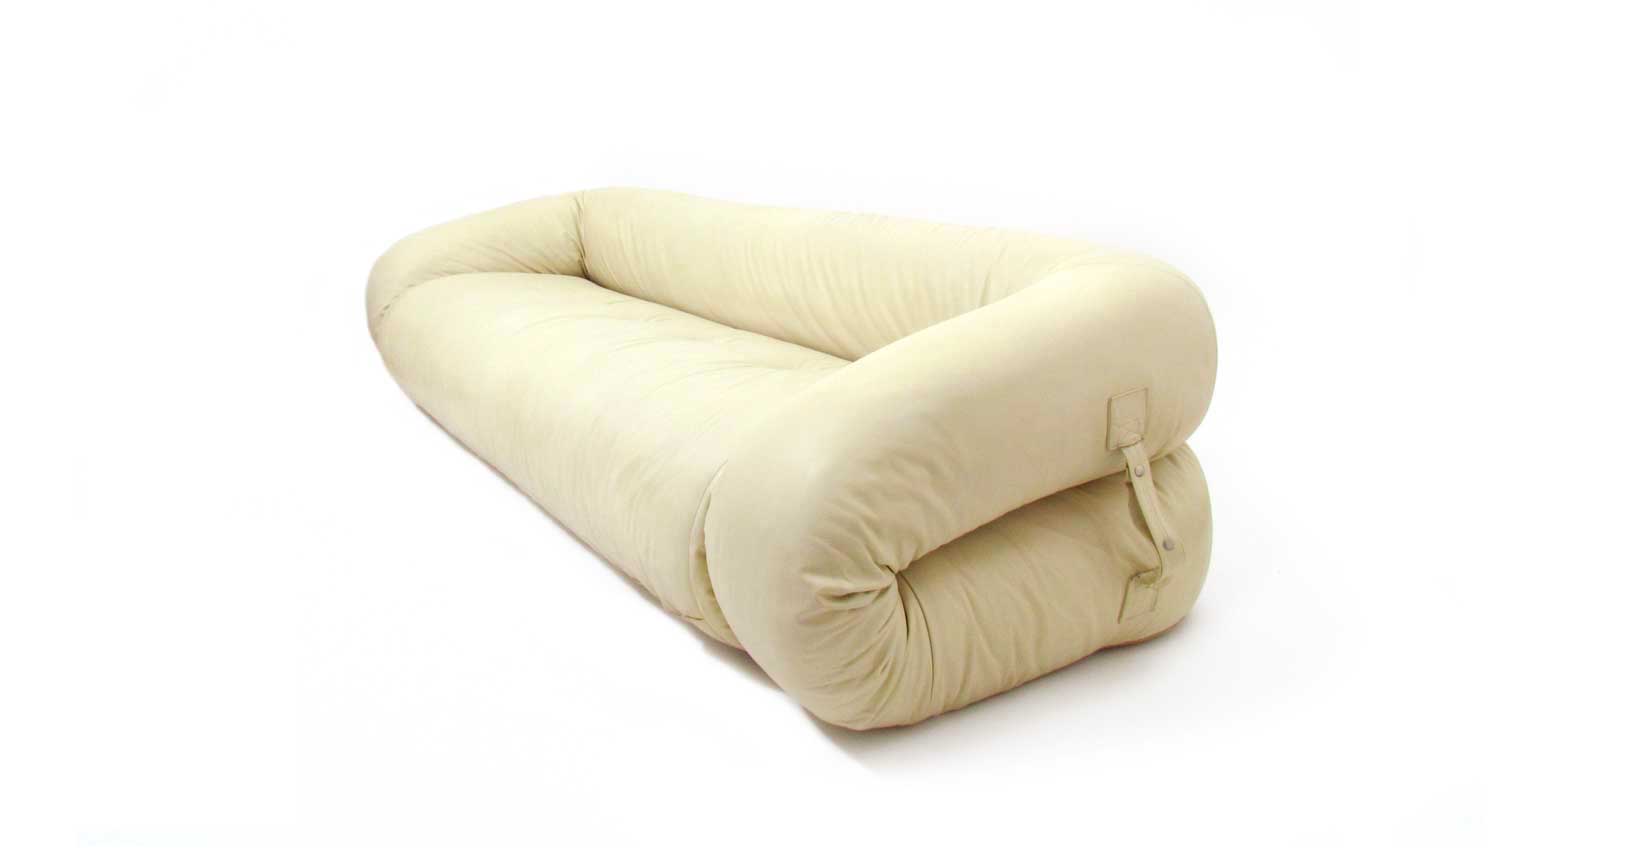 anfibio sofa vintage design iconicdesign furniture leather alessandro becchi giovannetti